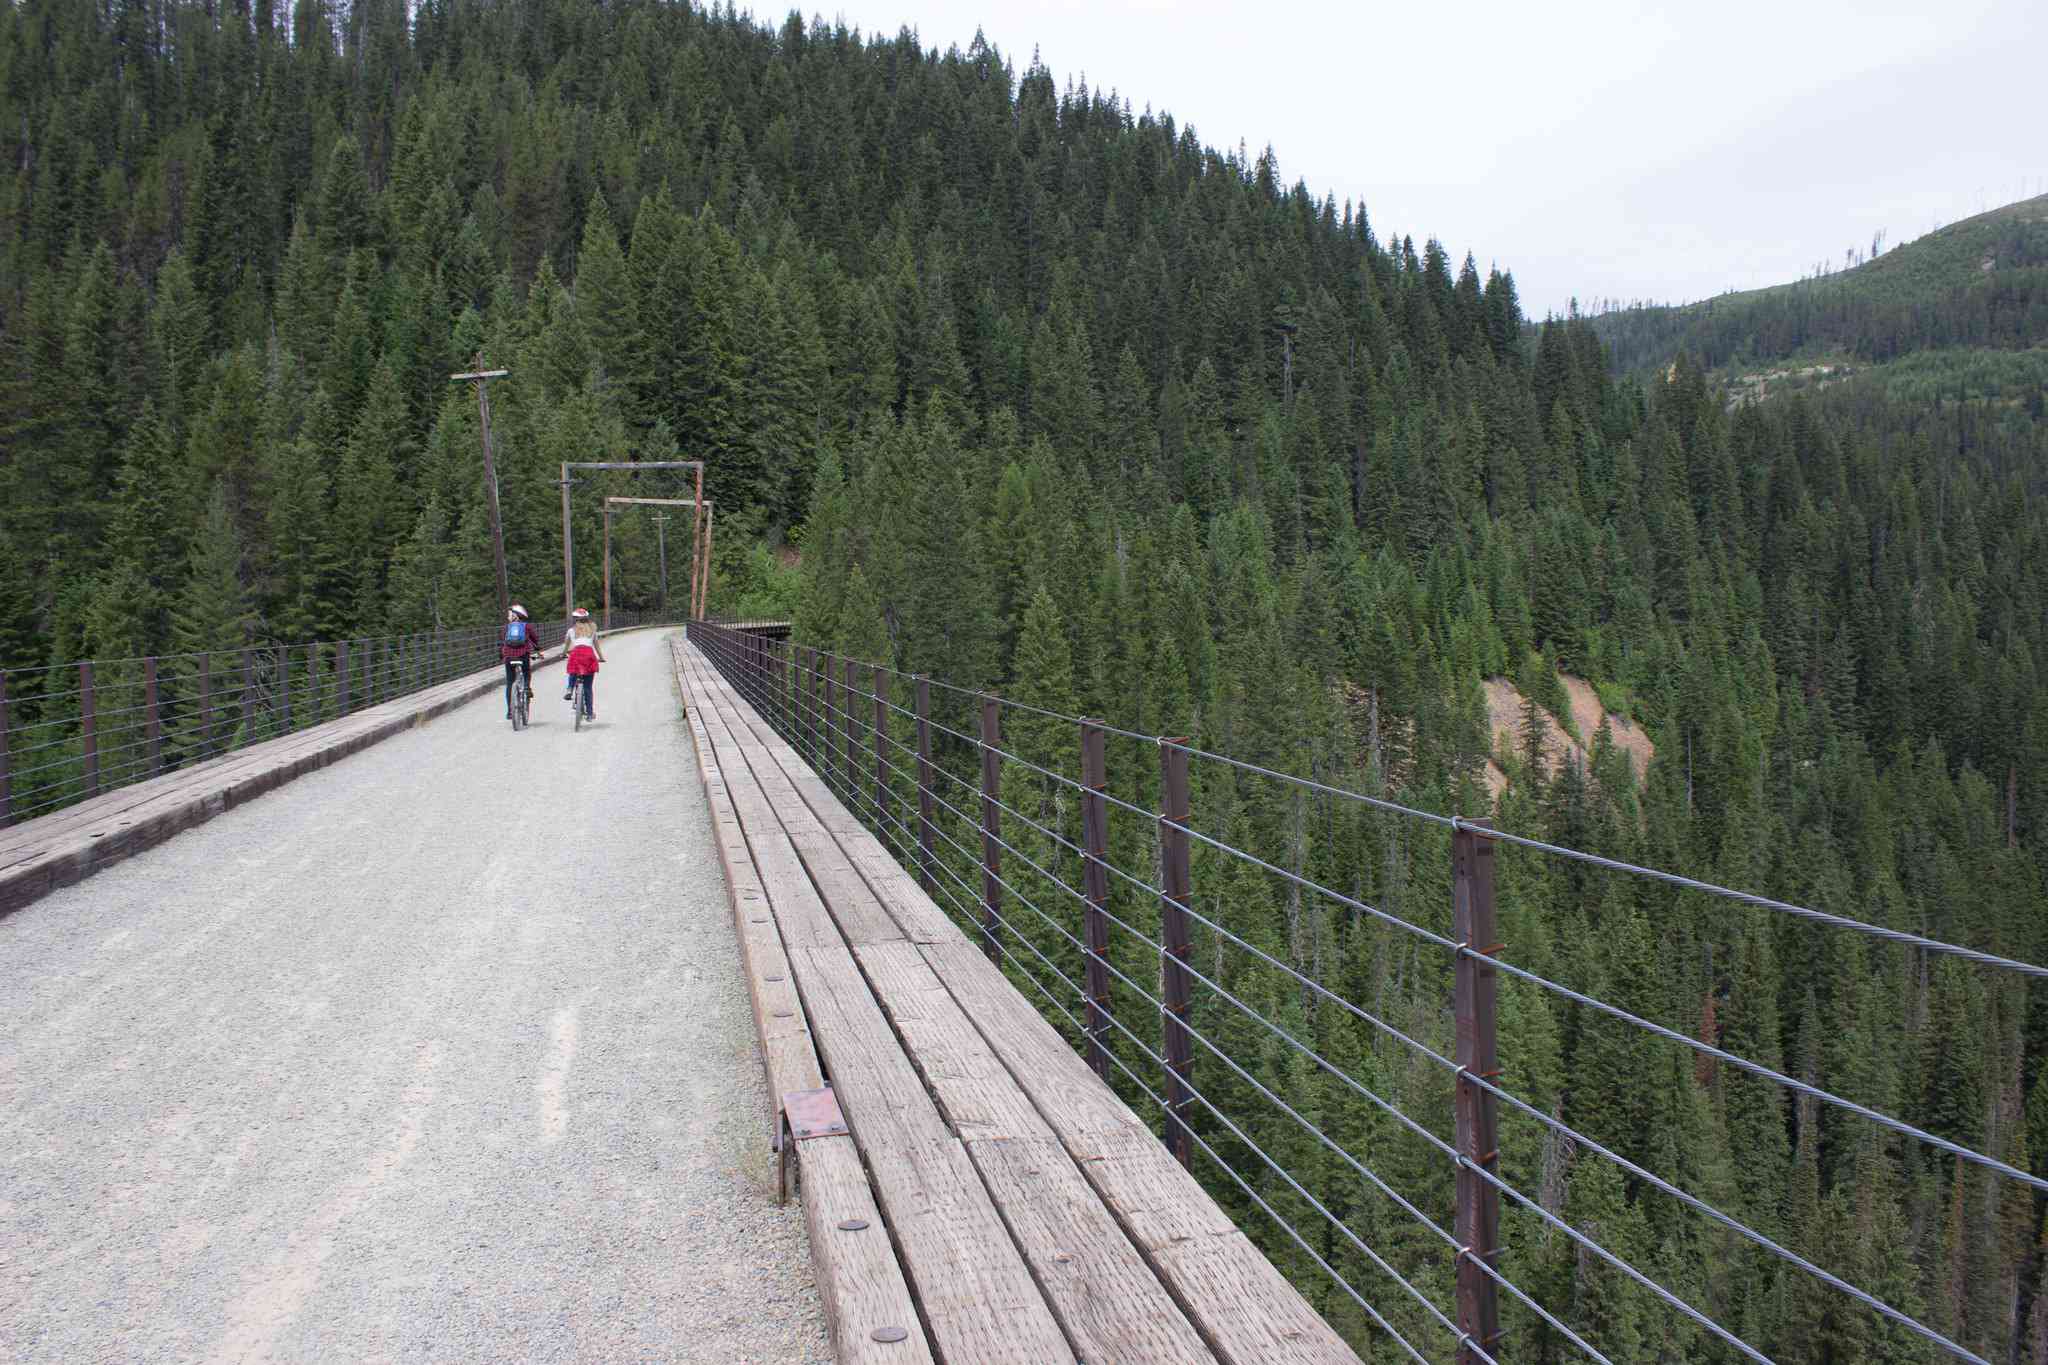 两个人骑着自行车穿过松林中的一座高桥